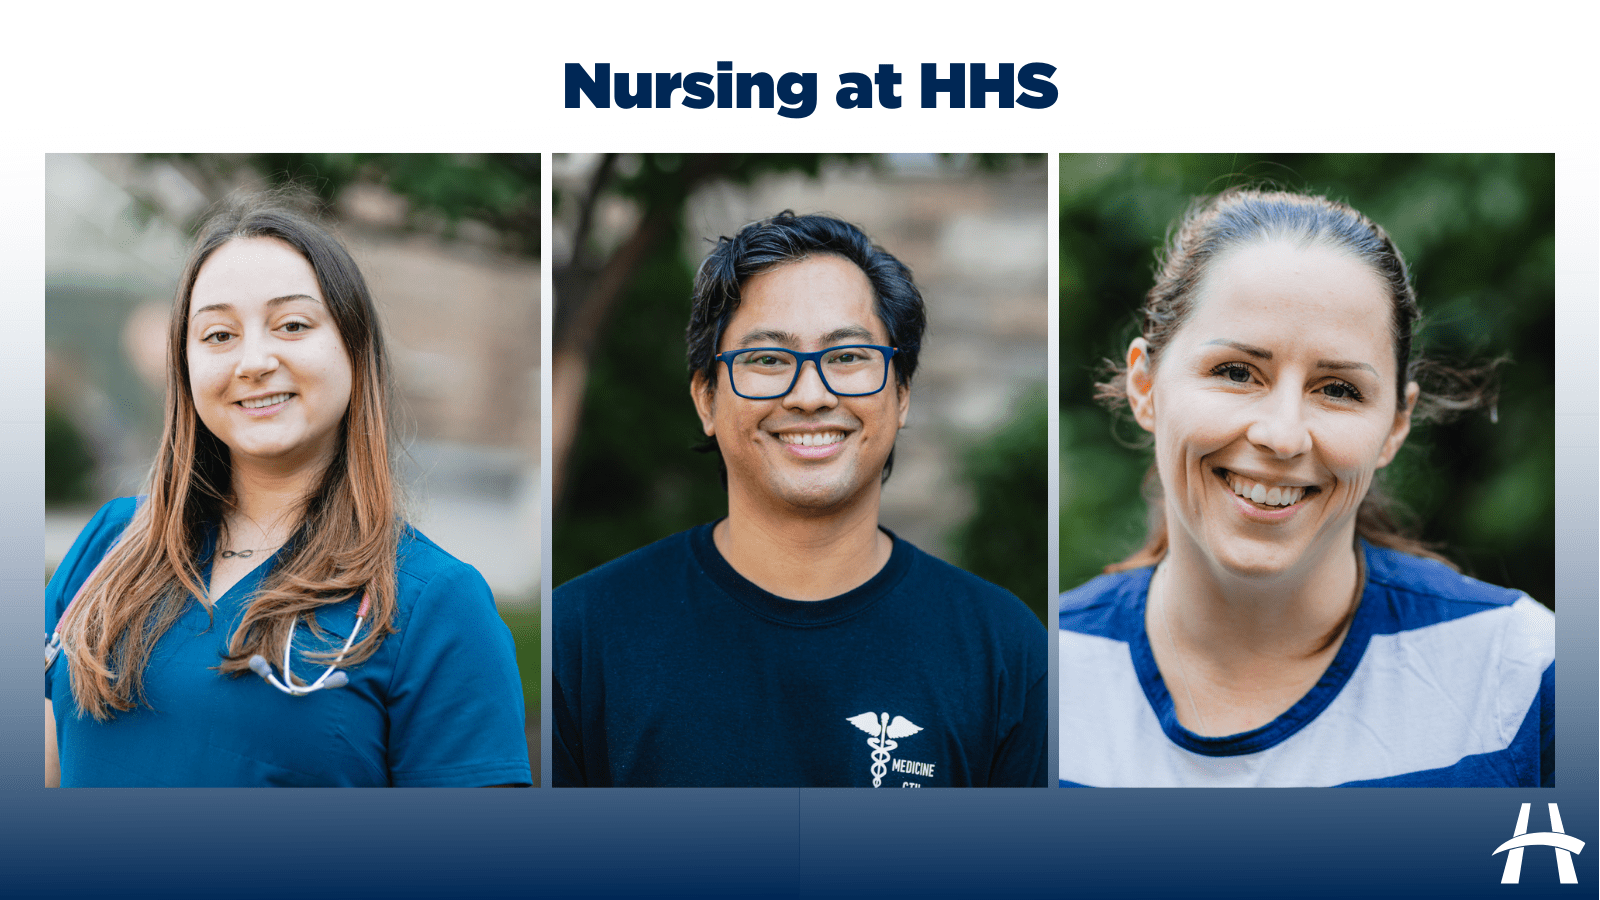 Three nurses collage